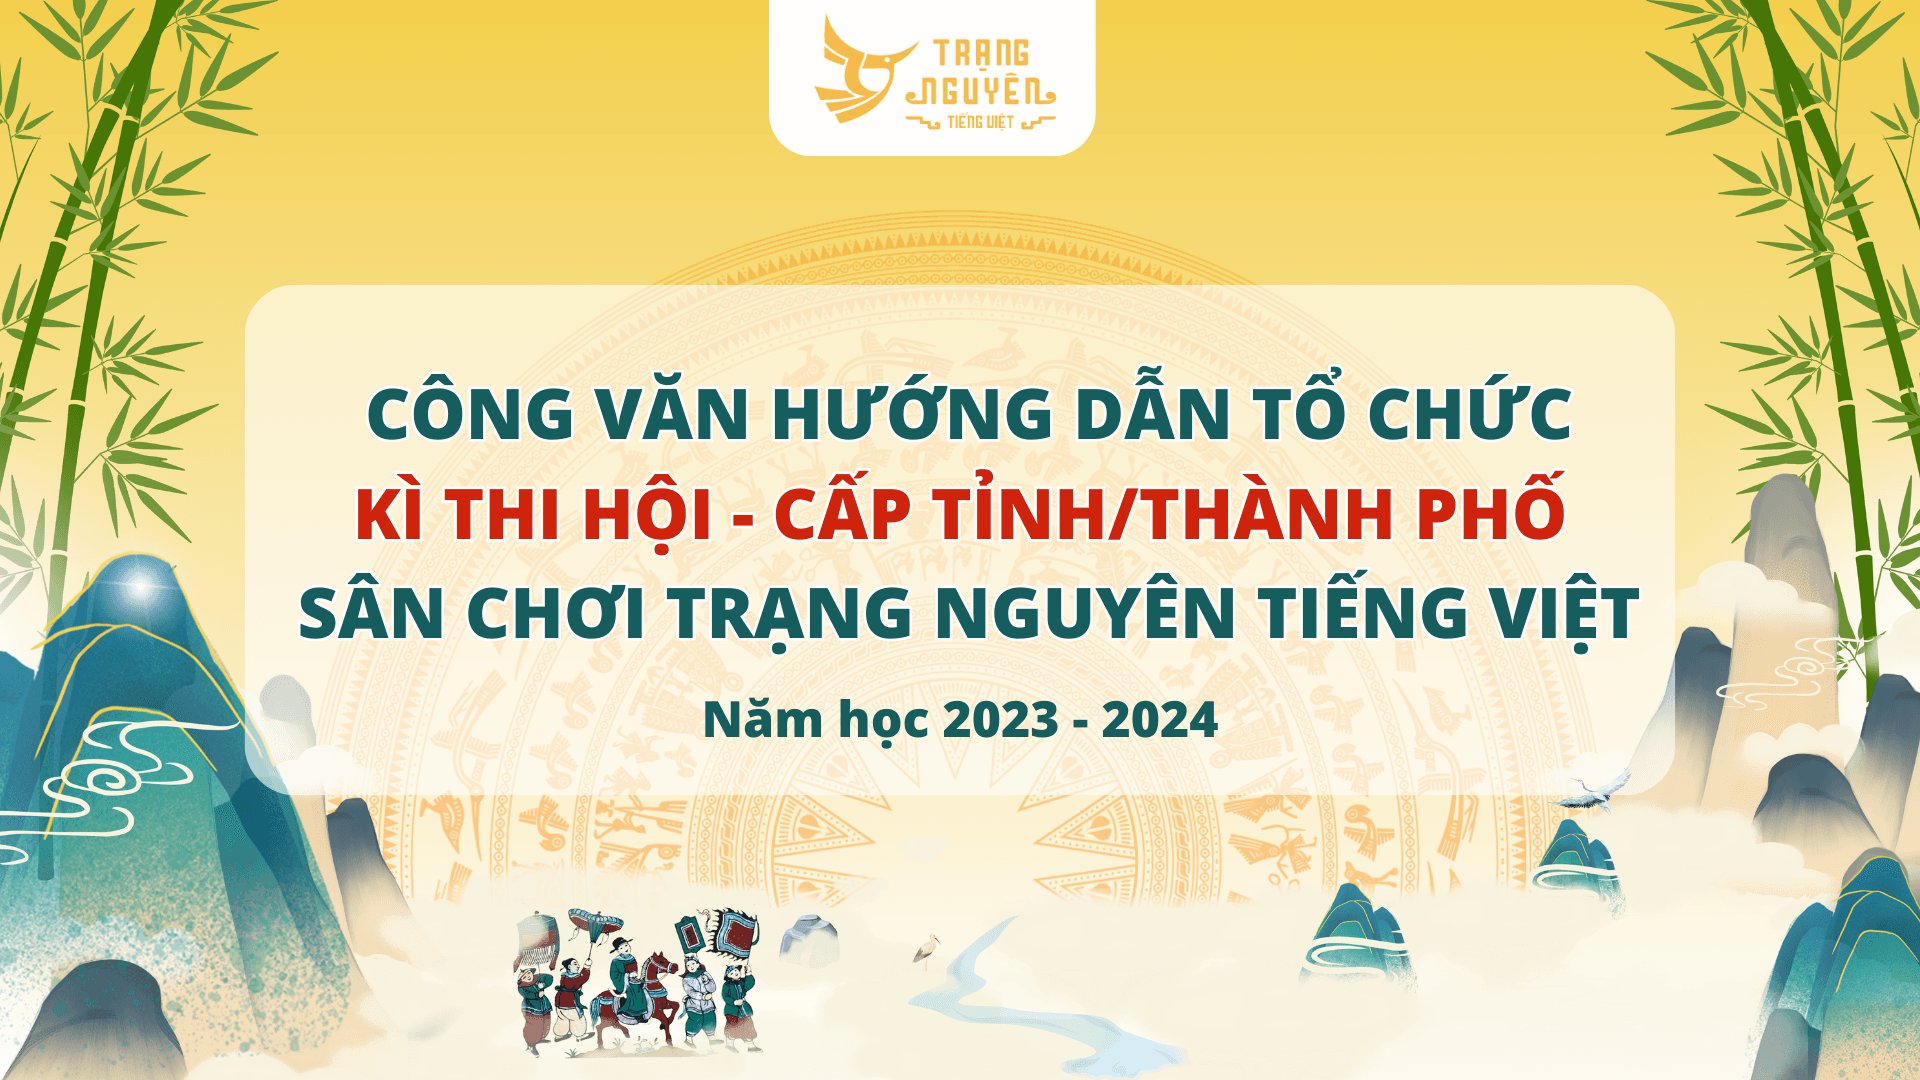 cong-van-huong-dan-to-chuc-ki-thi-hoi-cap-tinh-thanh-pho-nam-hoc-2023-2024-1